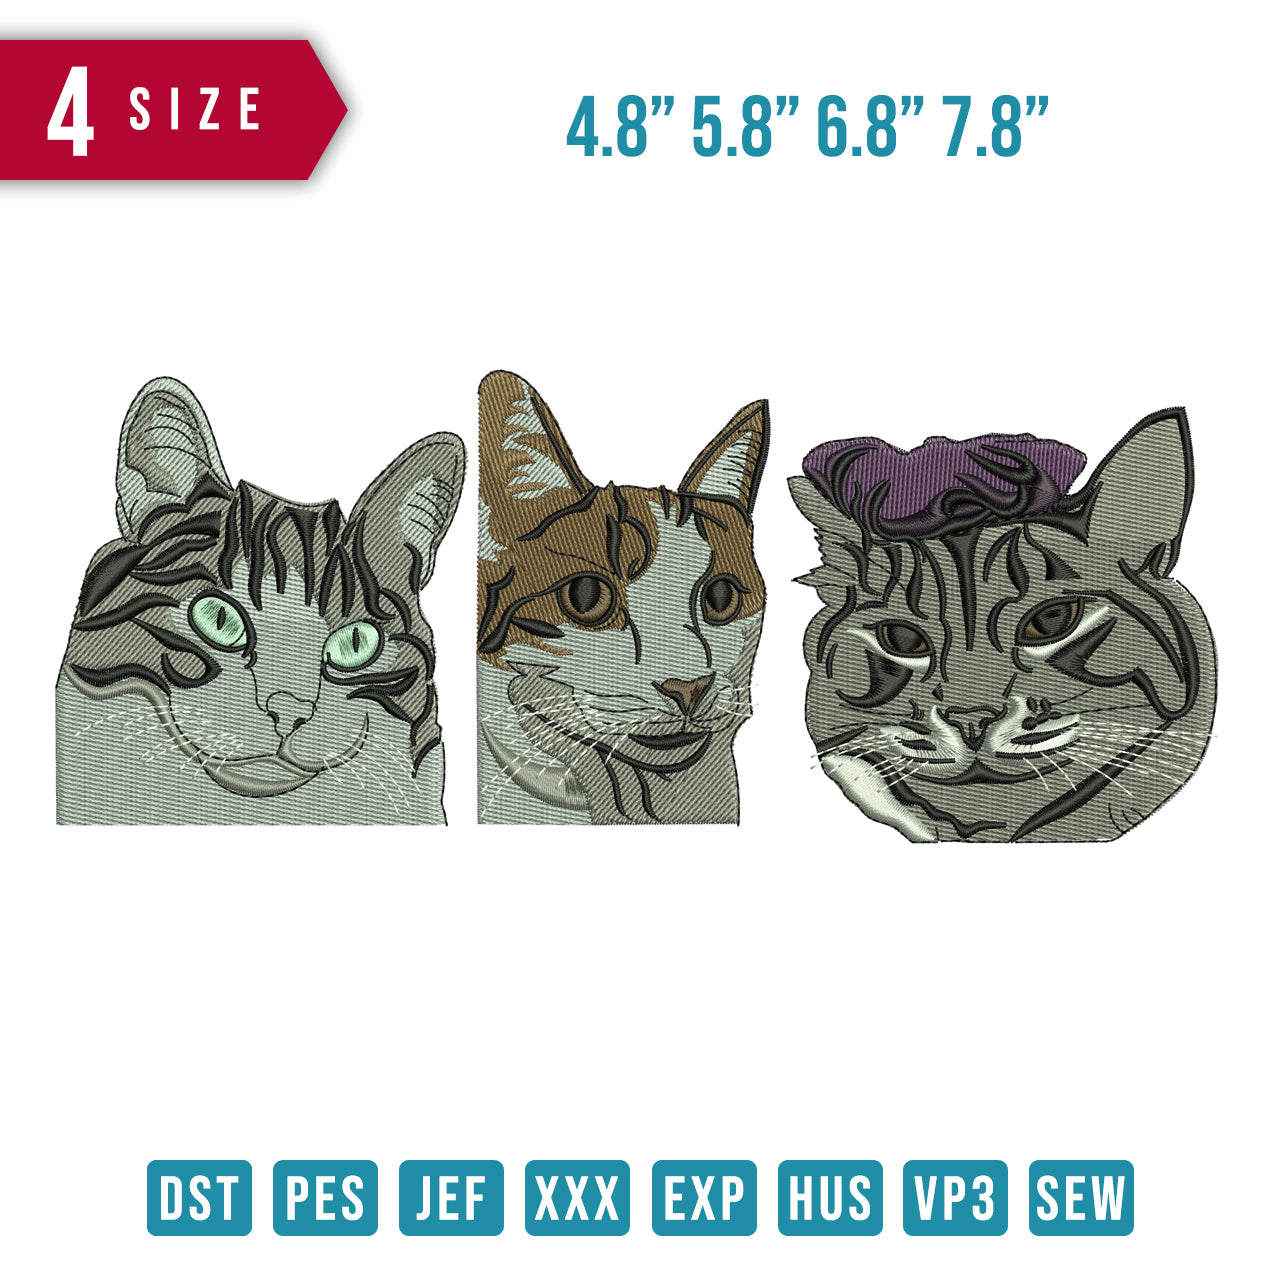 3 cat faces